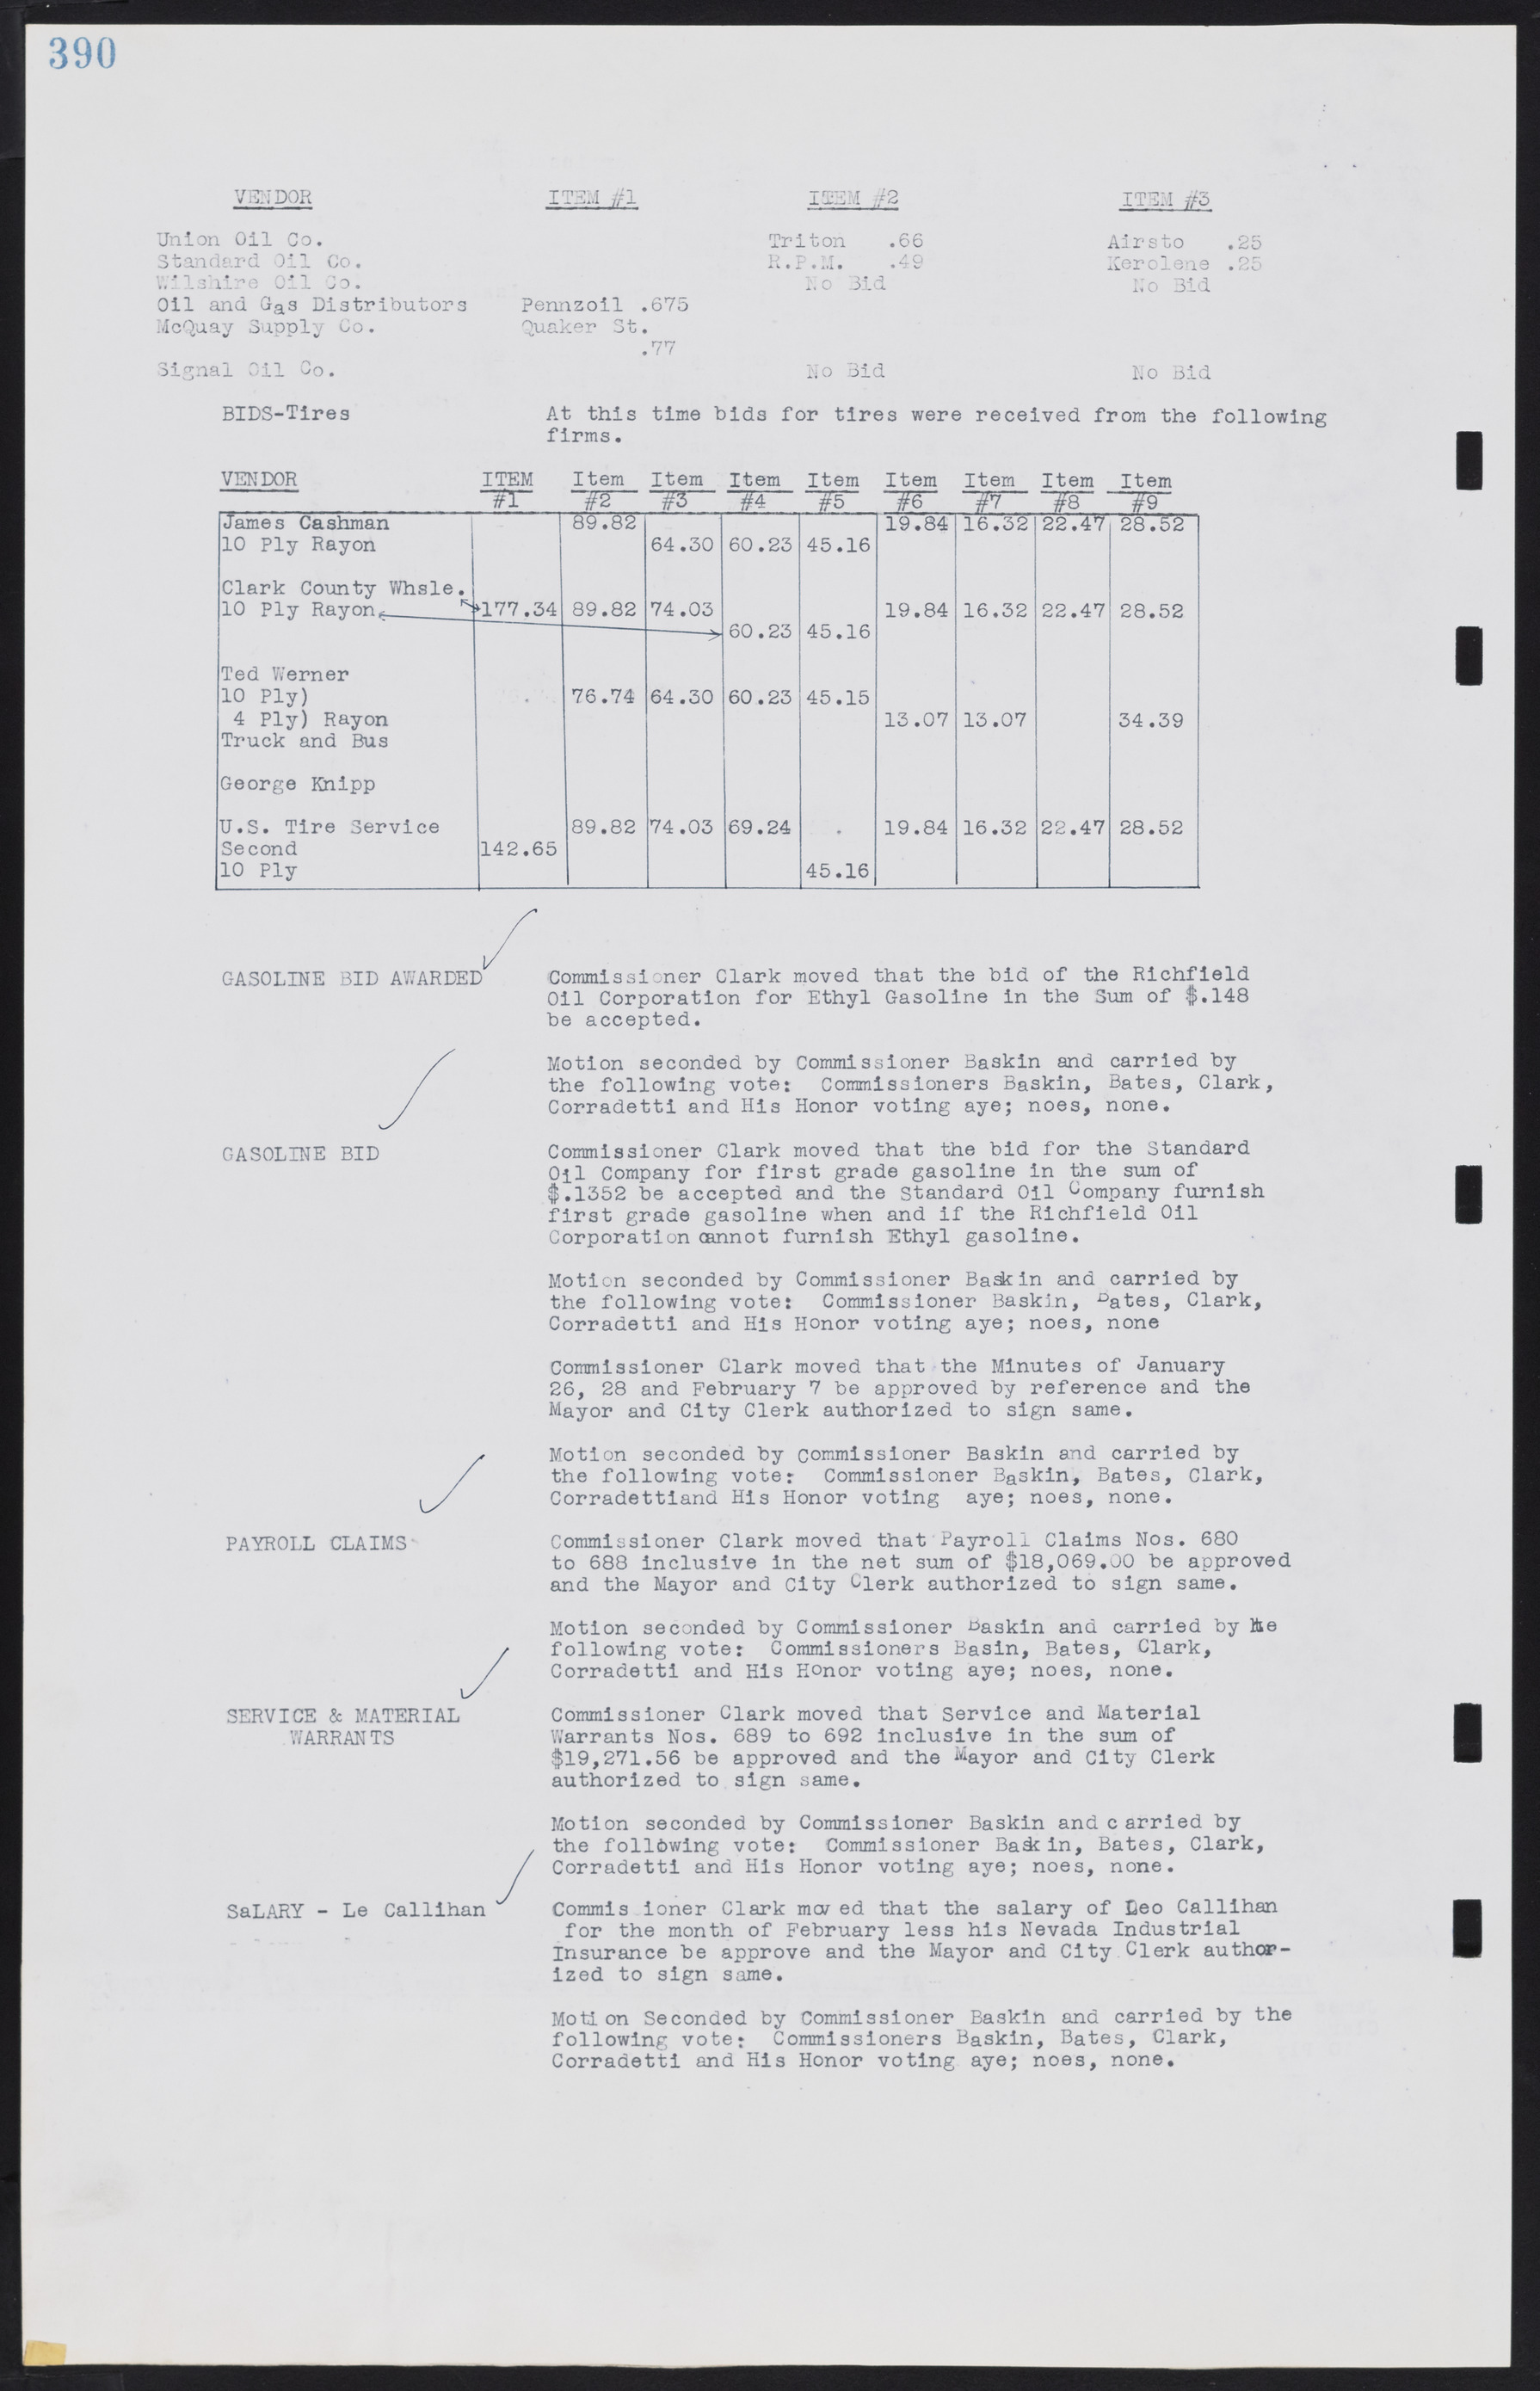 Las Vegas City Commission Minutes, August 11, 1942 to December 30, 1946, lvc000005-417